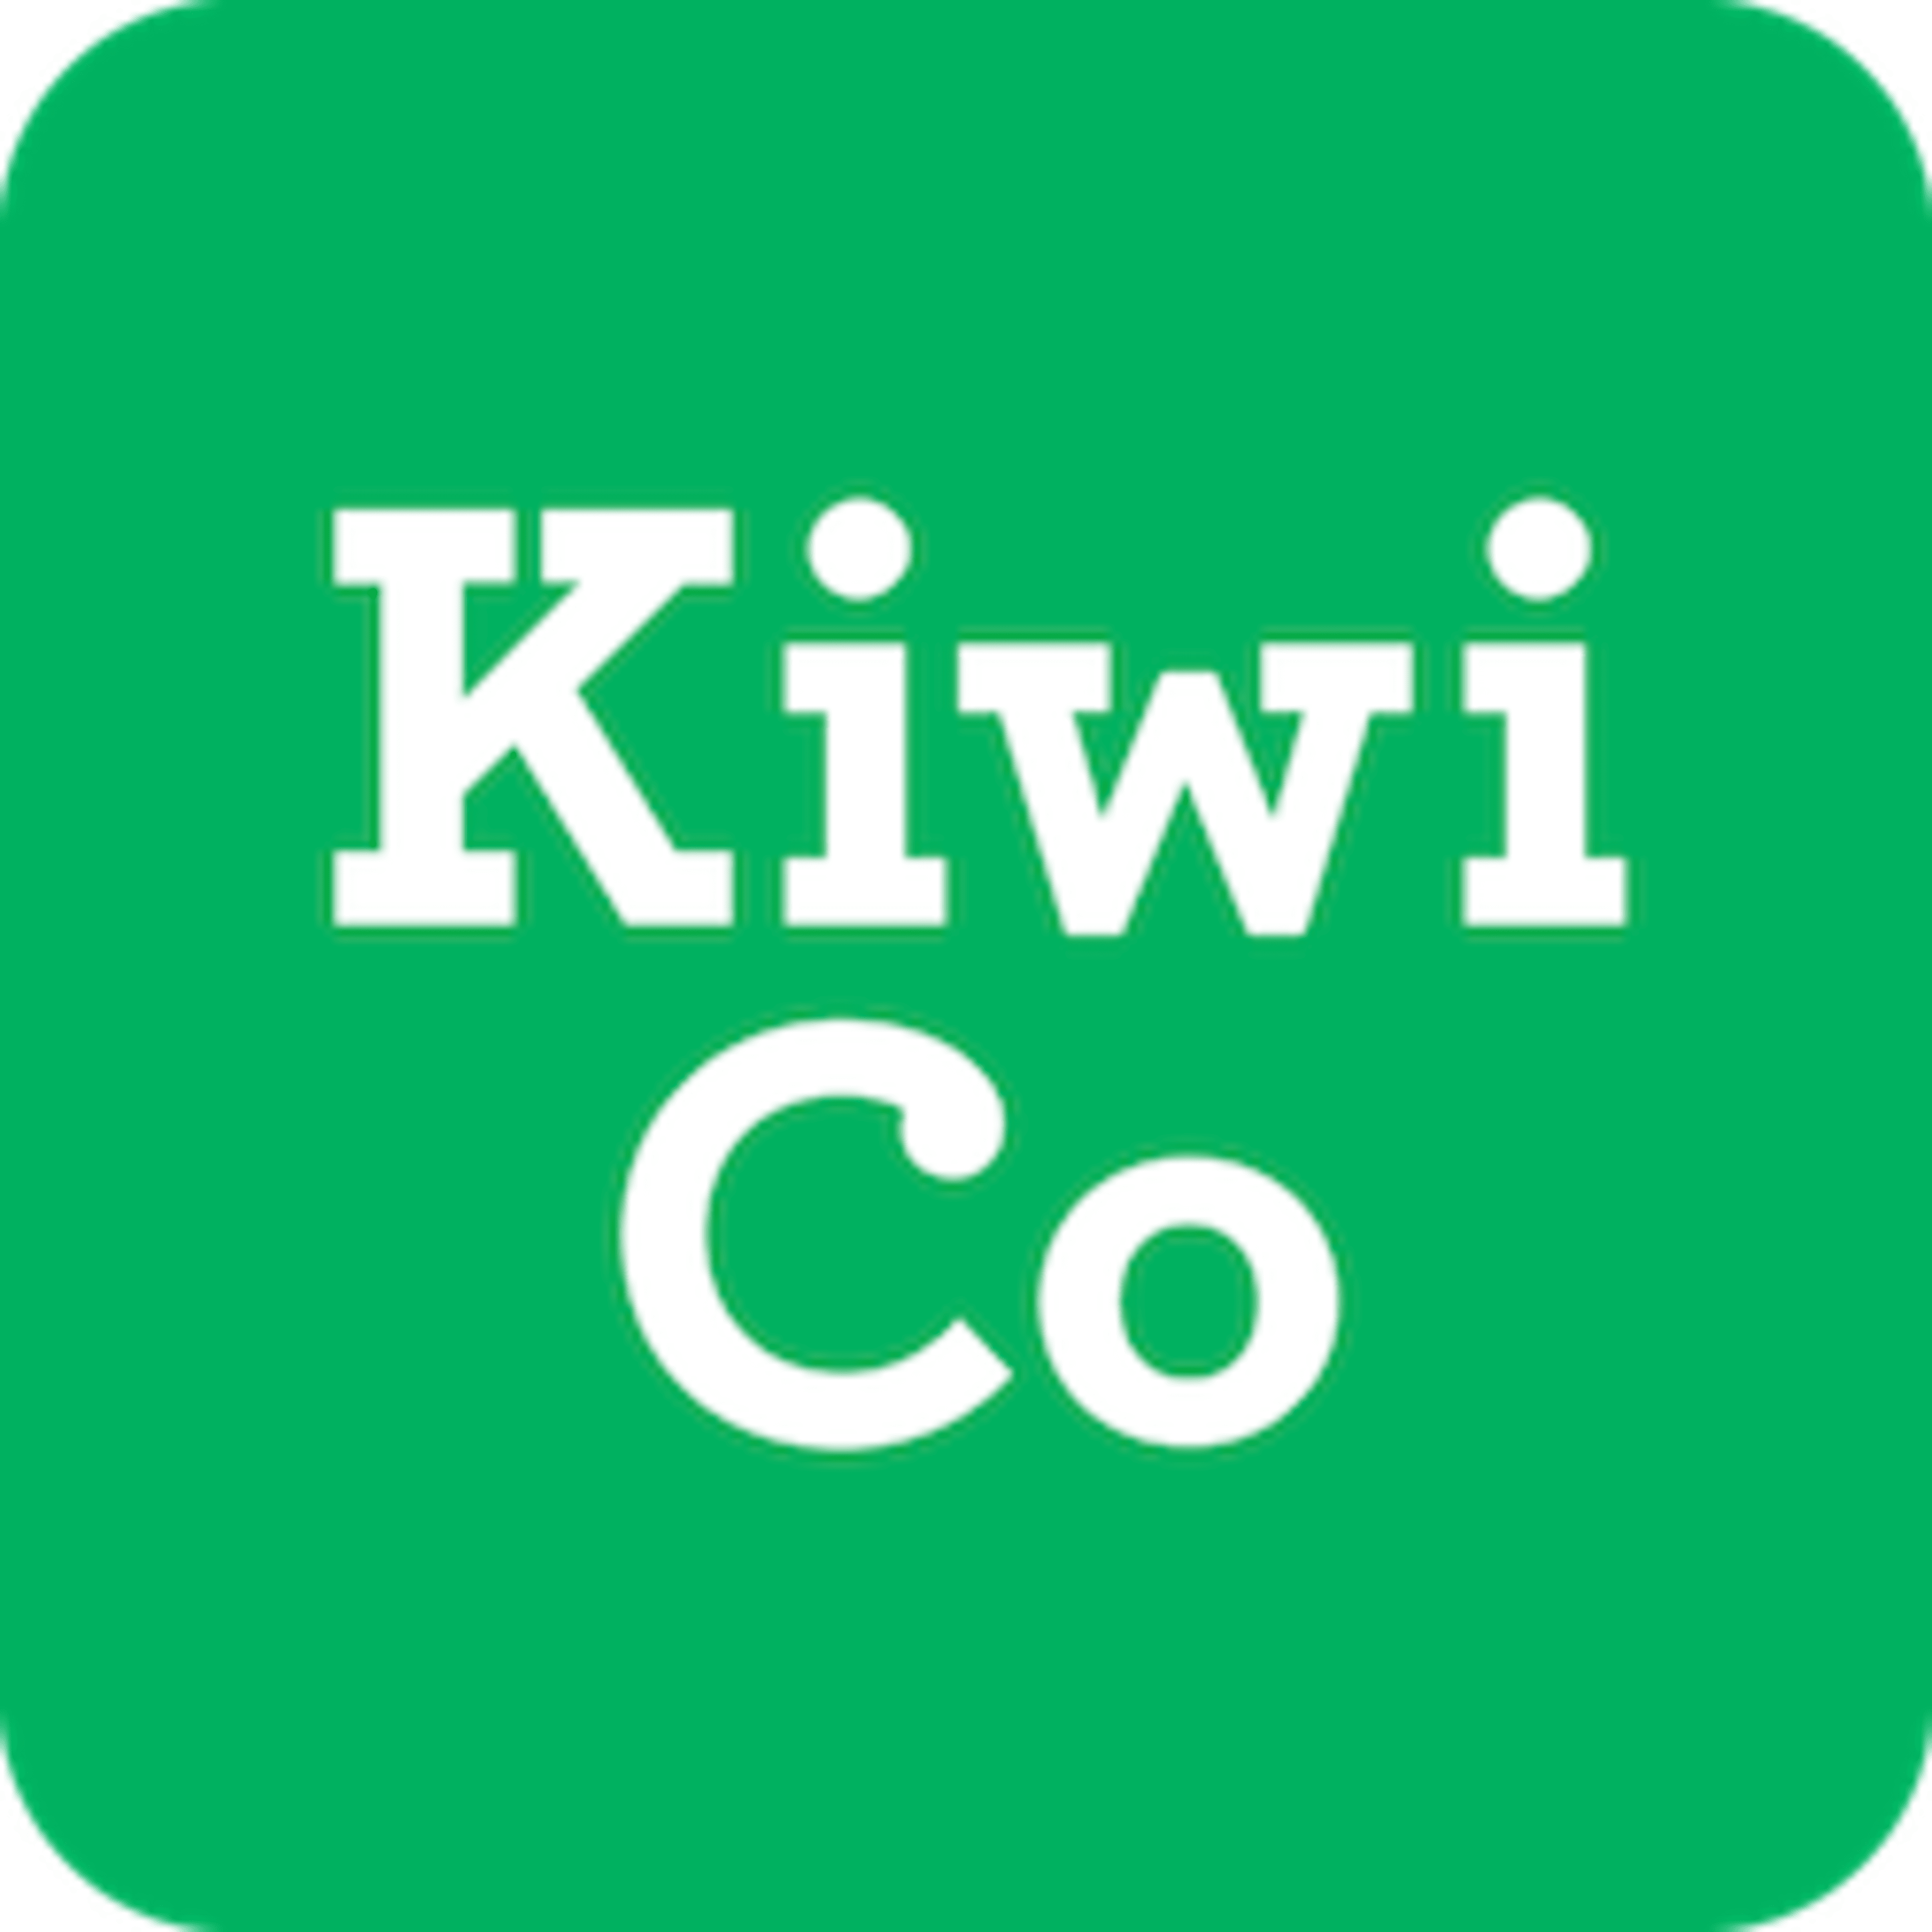 KiwiCoCode